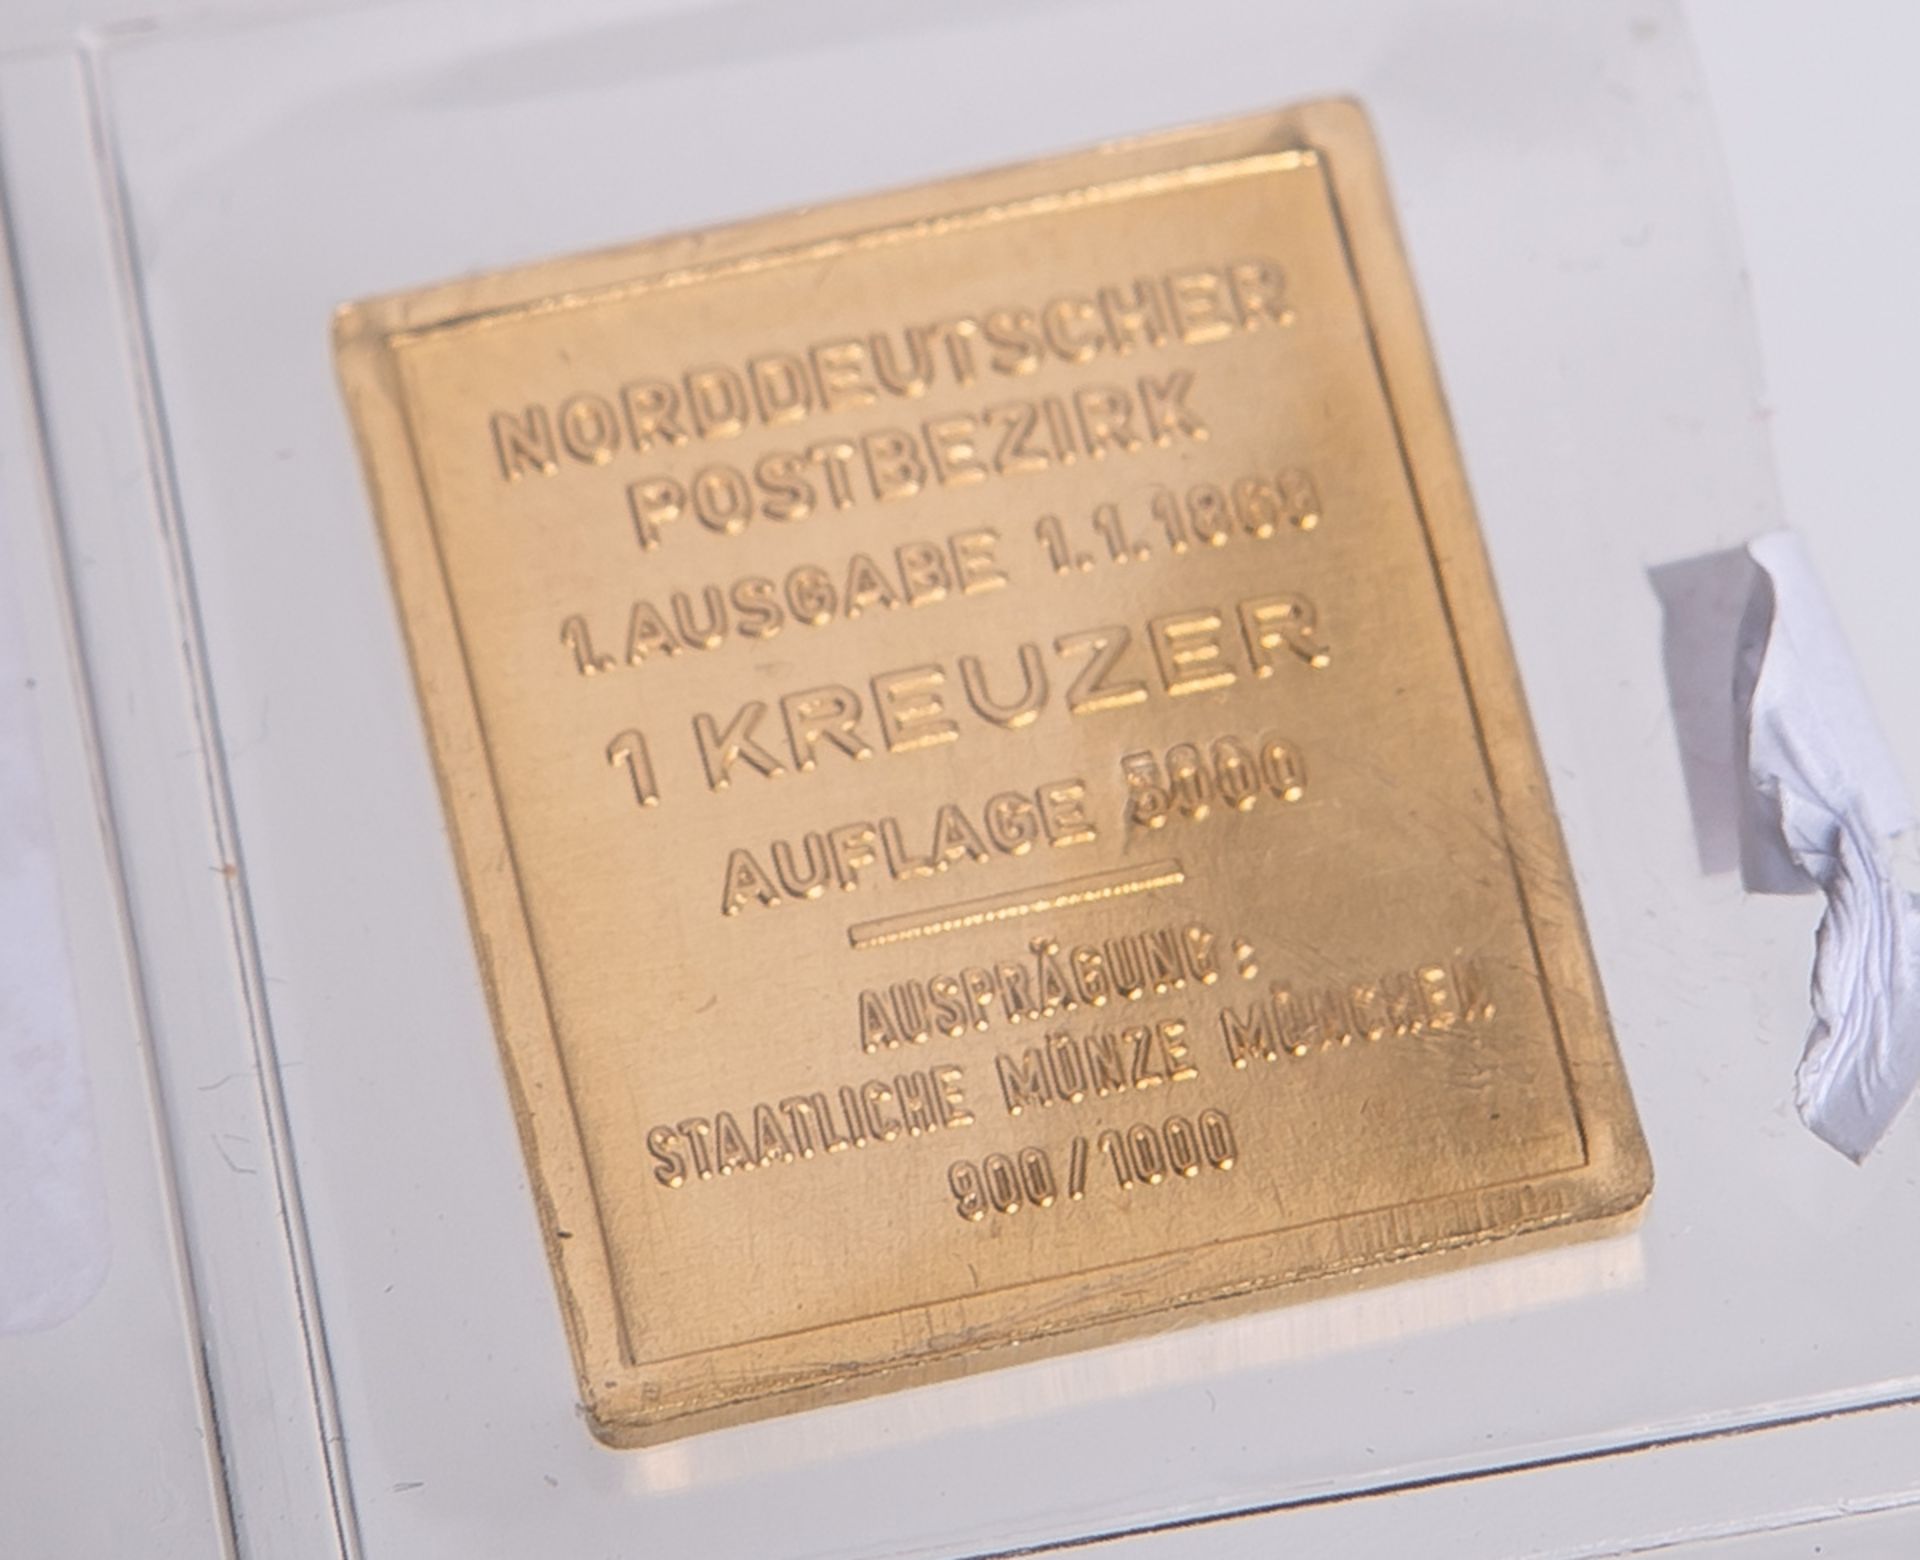 1 Kreuzer 900 Gold, Norddeutscher Postbezirk - Image 2 of 2